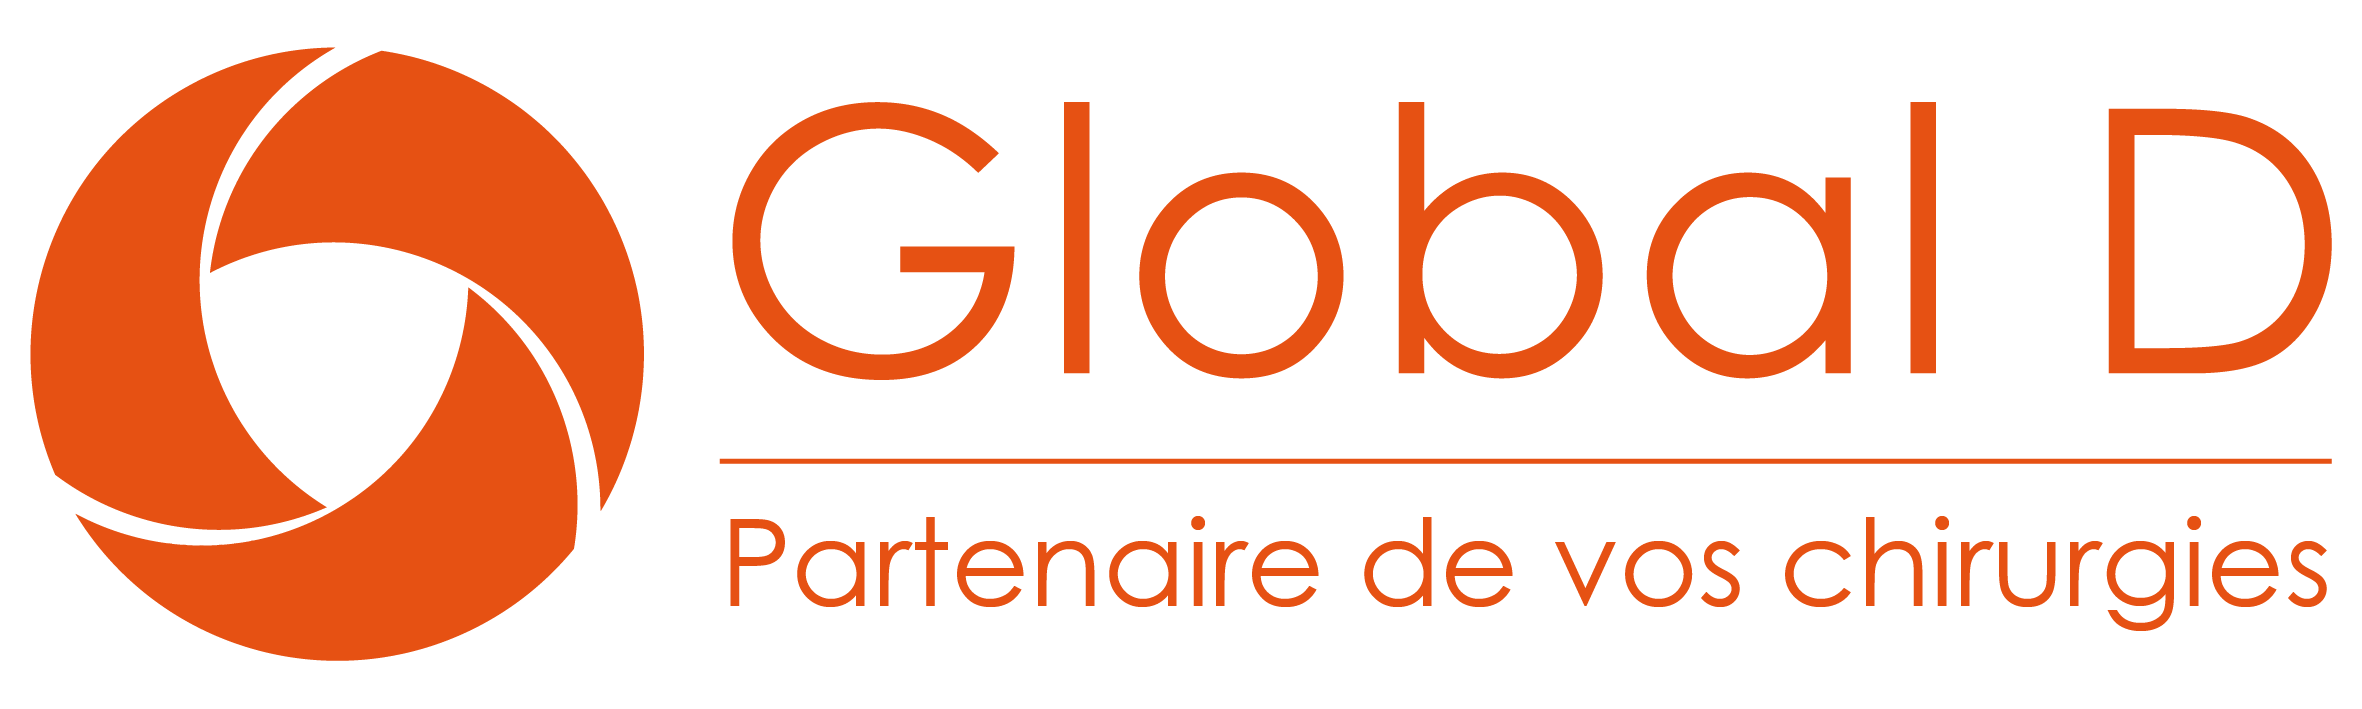 Logos-GlobalDbaseline3